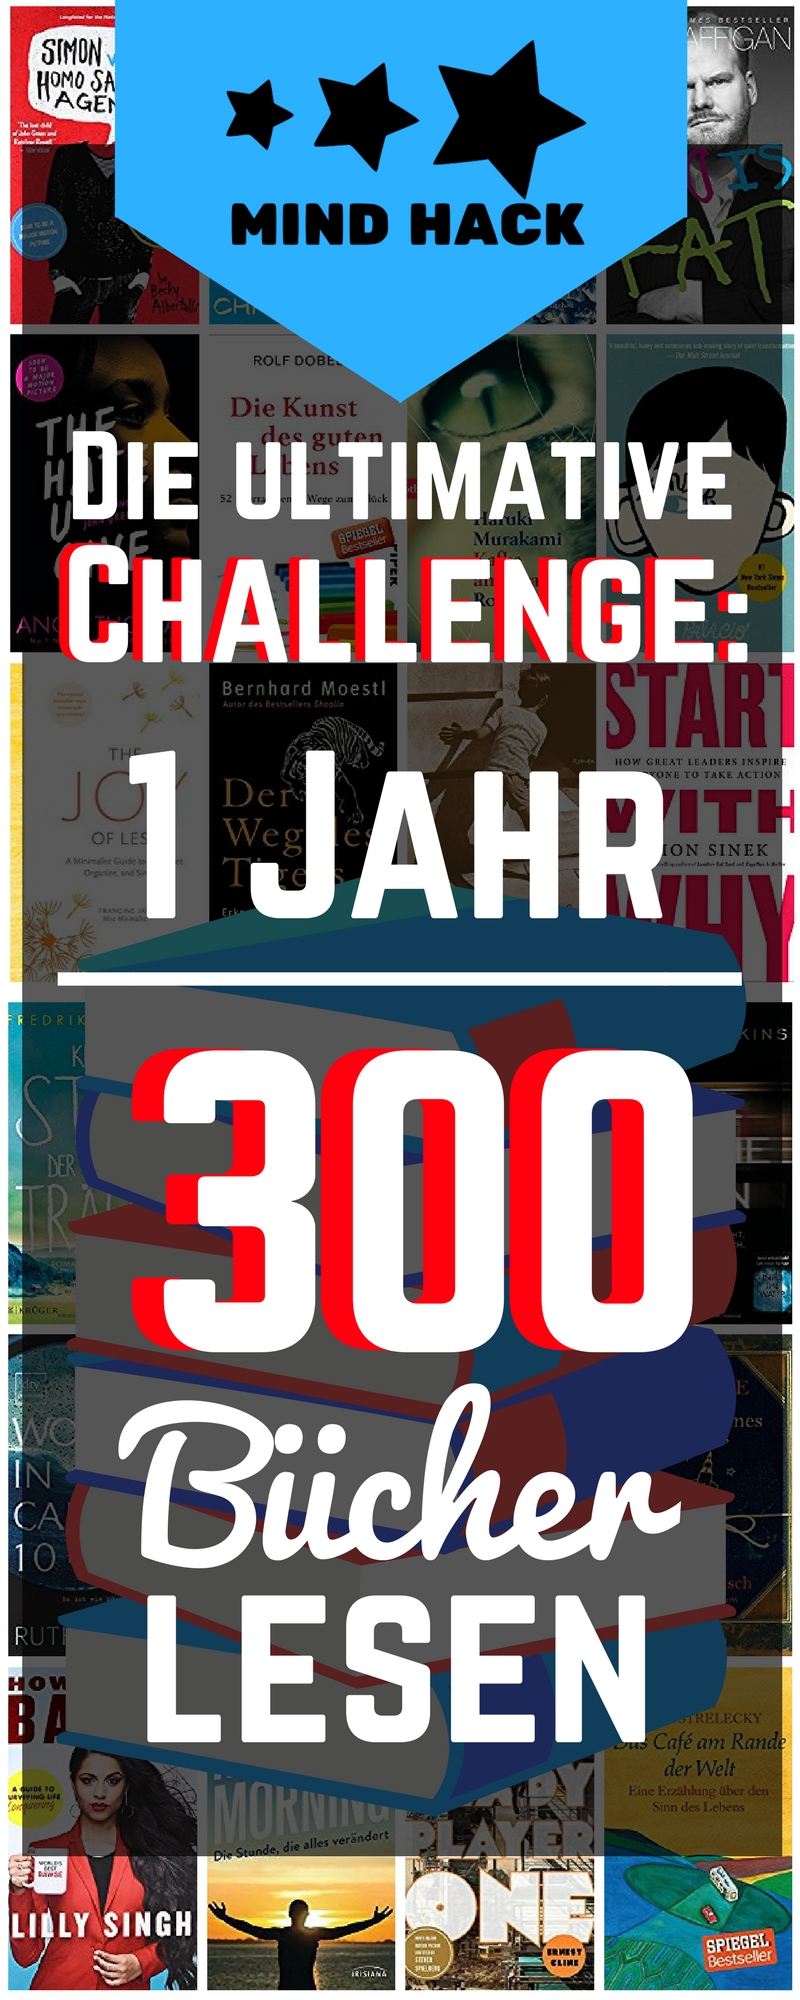 Die ultimative Lese Challenge - 1 Jahr - 300 Bücher lesen - Buch Challenge 2018 - Mind Hack - Bücherwurm - Massive Reading